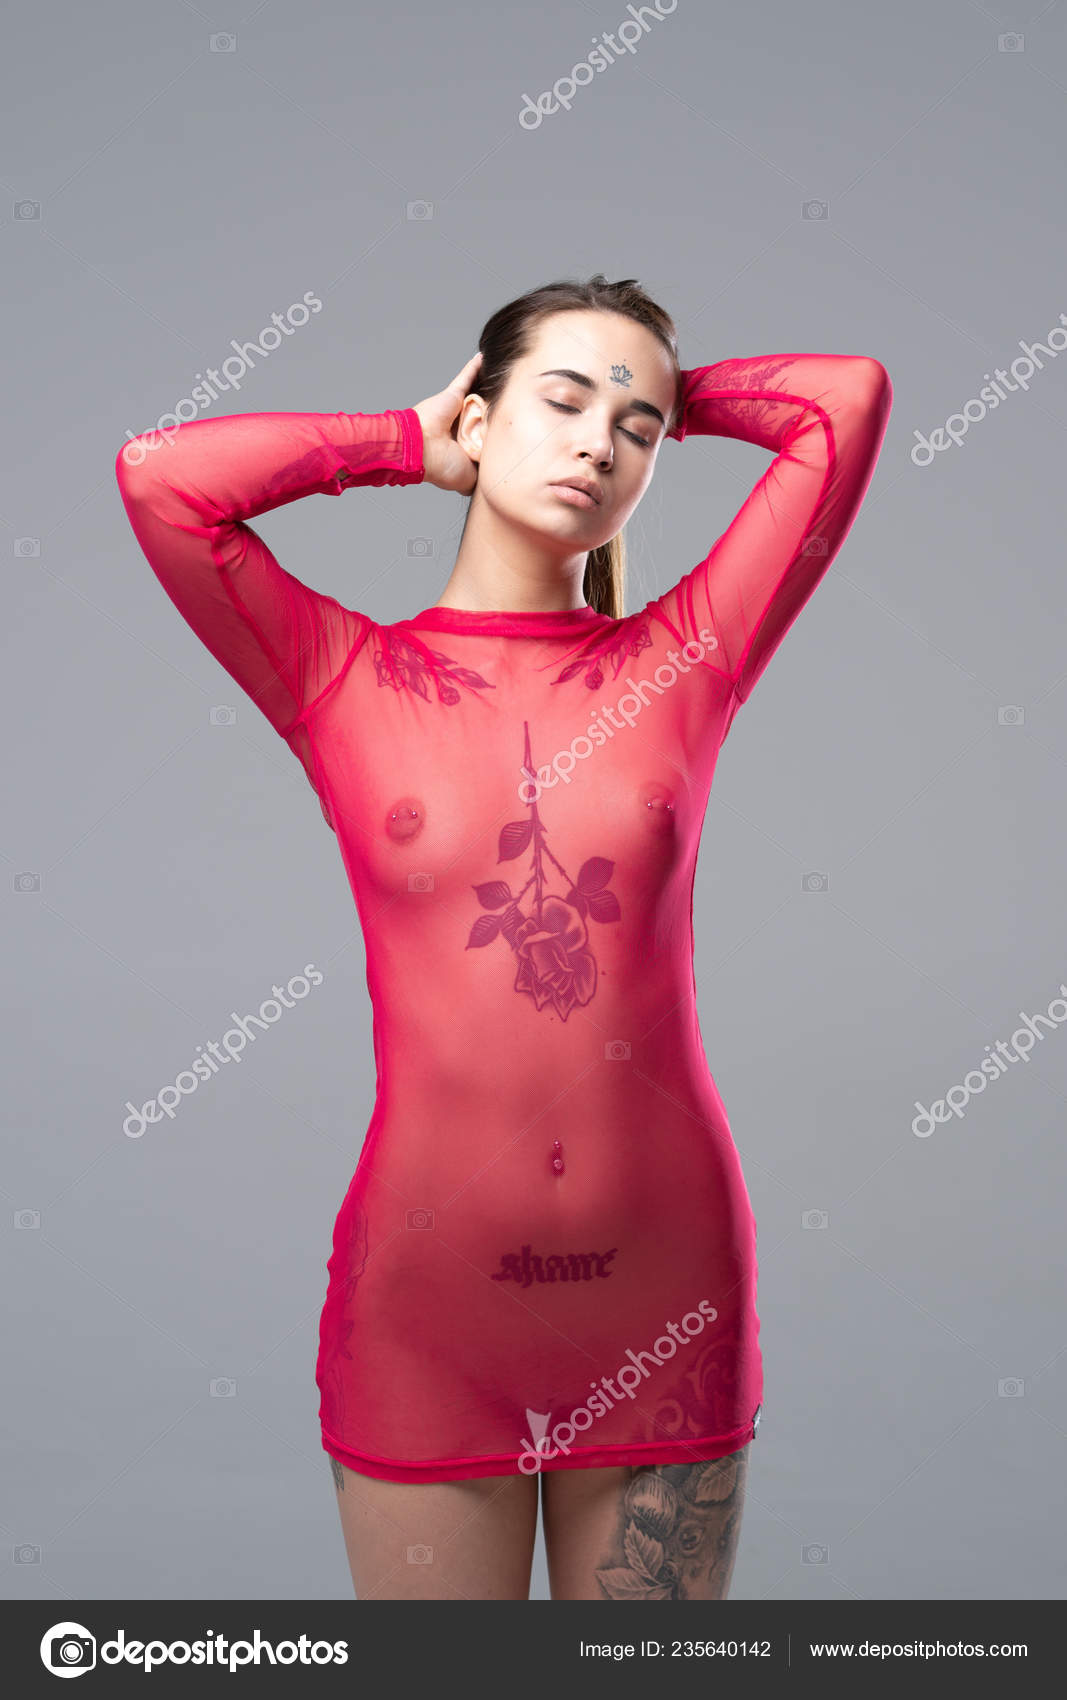 https://st4n.depositphotos.com/10086424/23564/i/1600/depositphotos_235640142-stock-photo-young-beautiful-girl-posing-nude.jpg